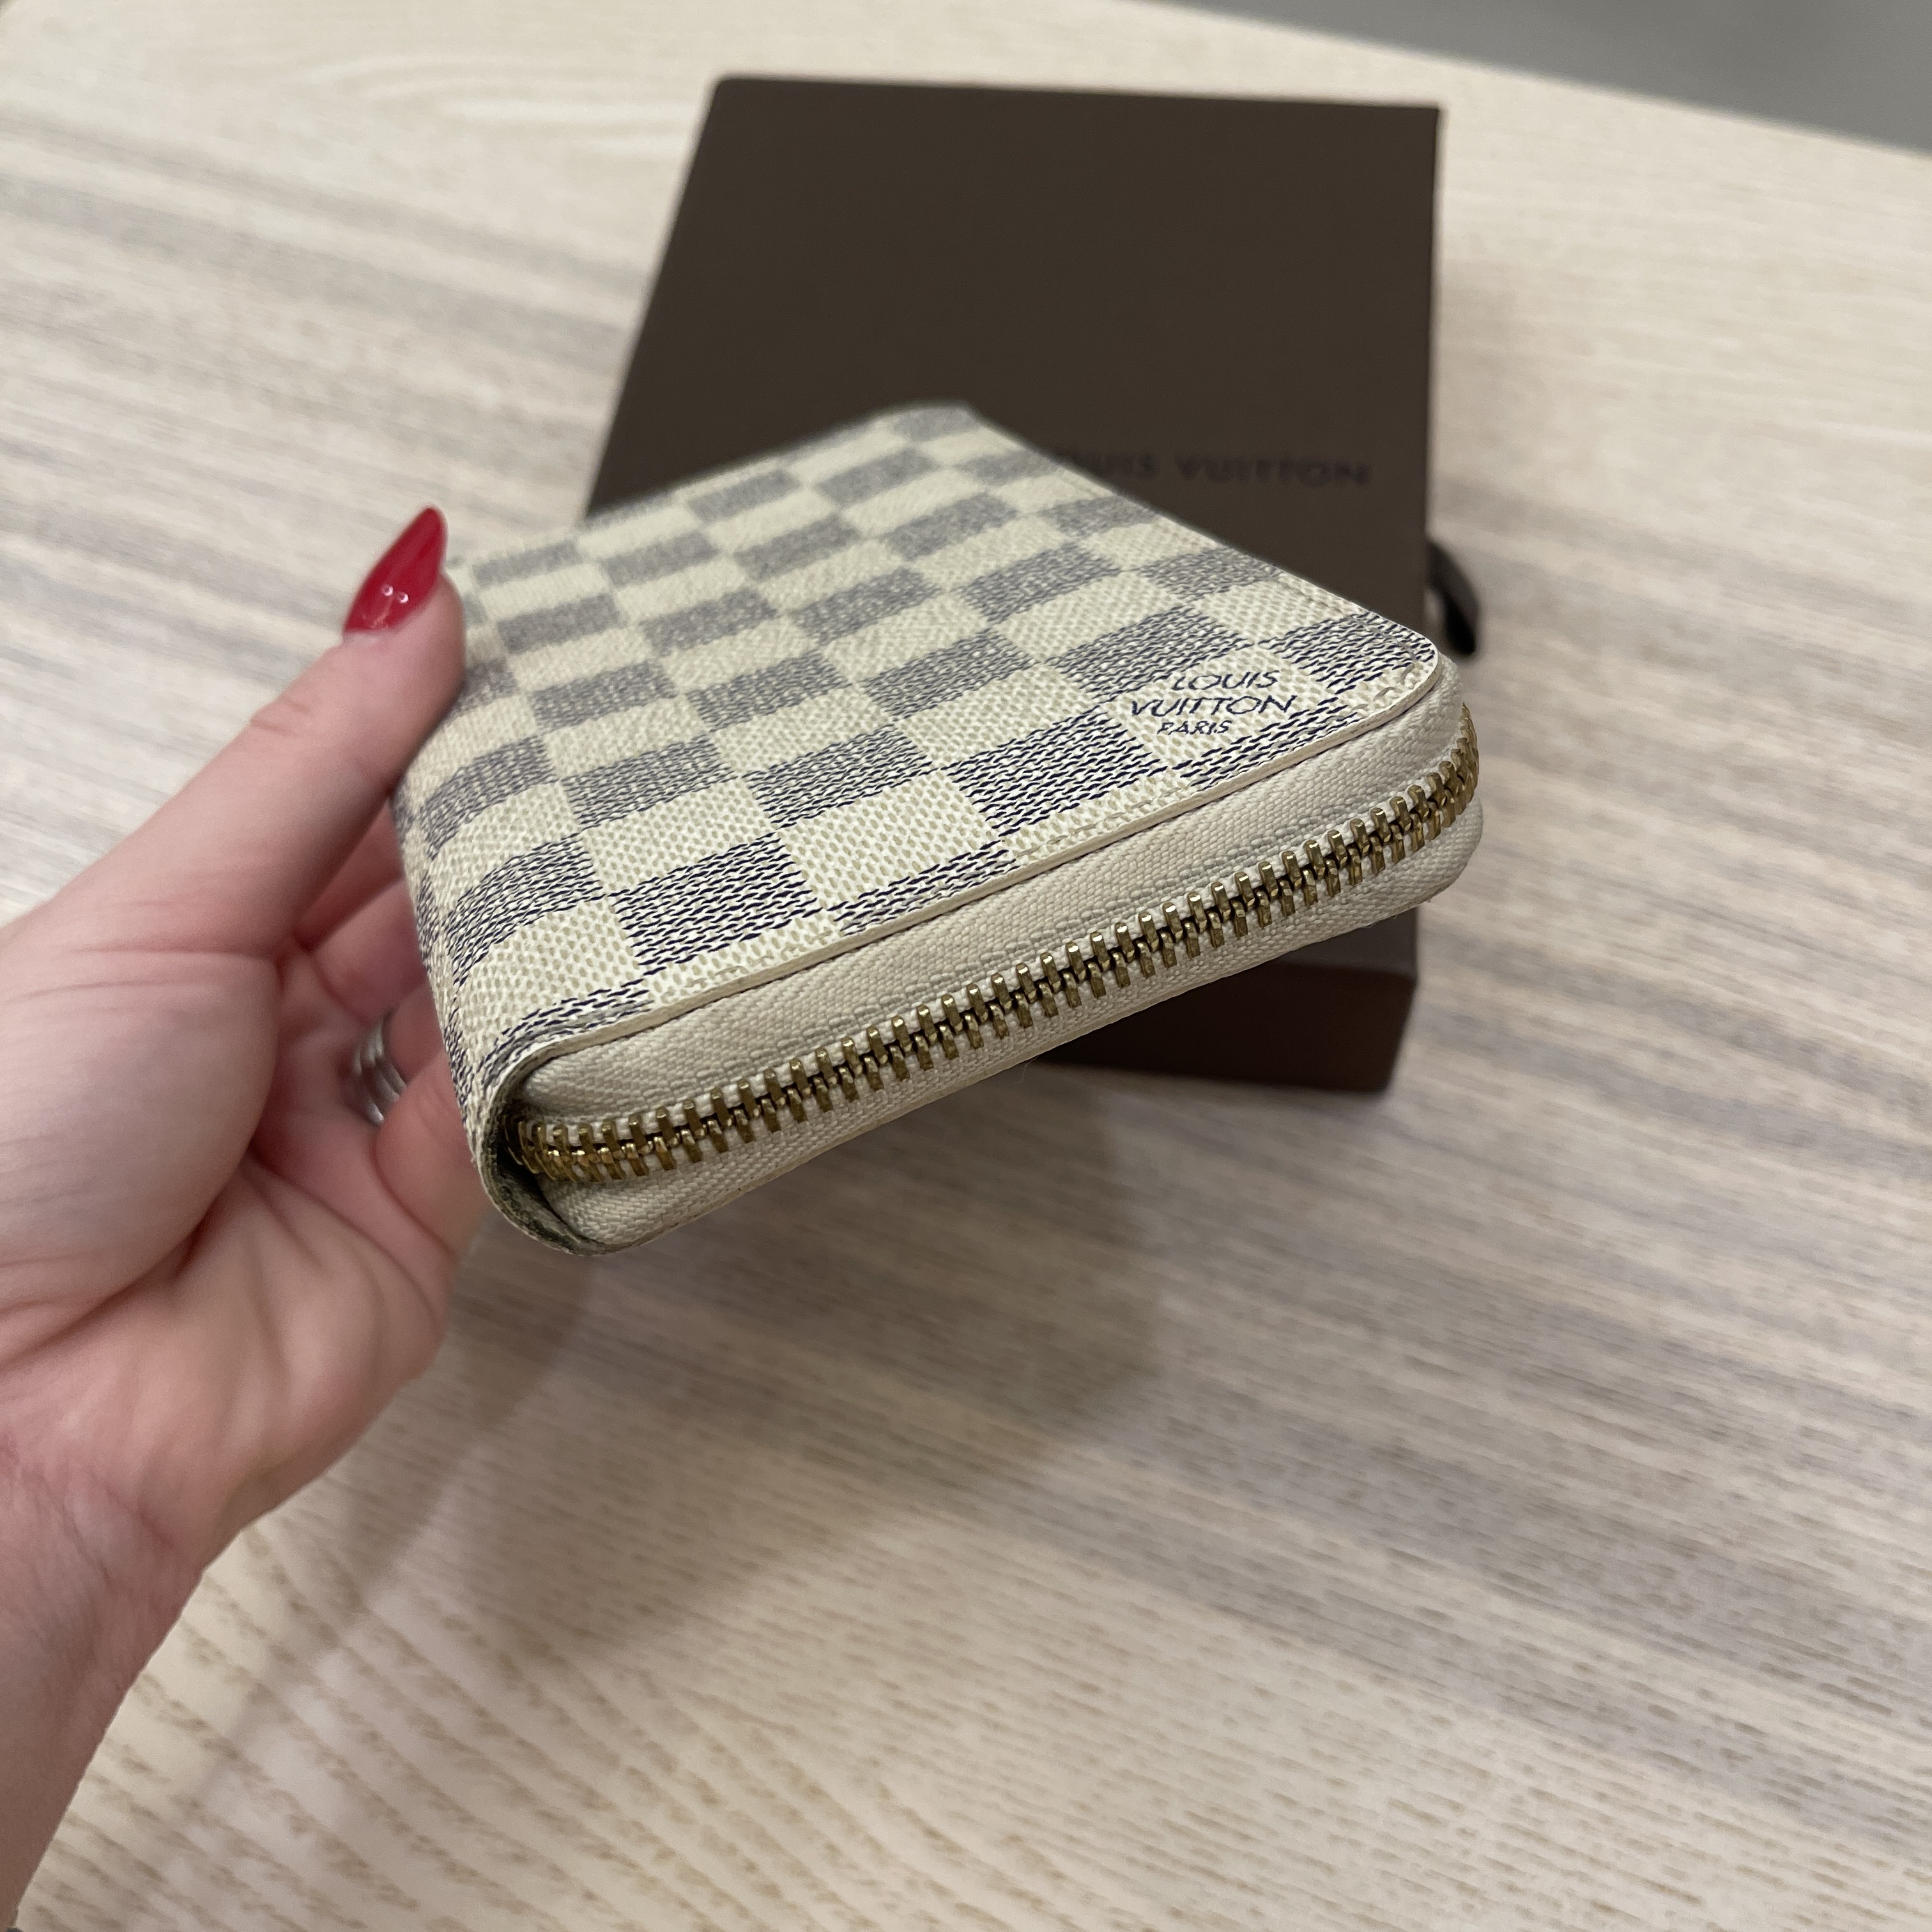 Authentic Louis Vuitton Zippy Compact Wallet Damier Azur - Reetzy